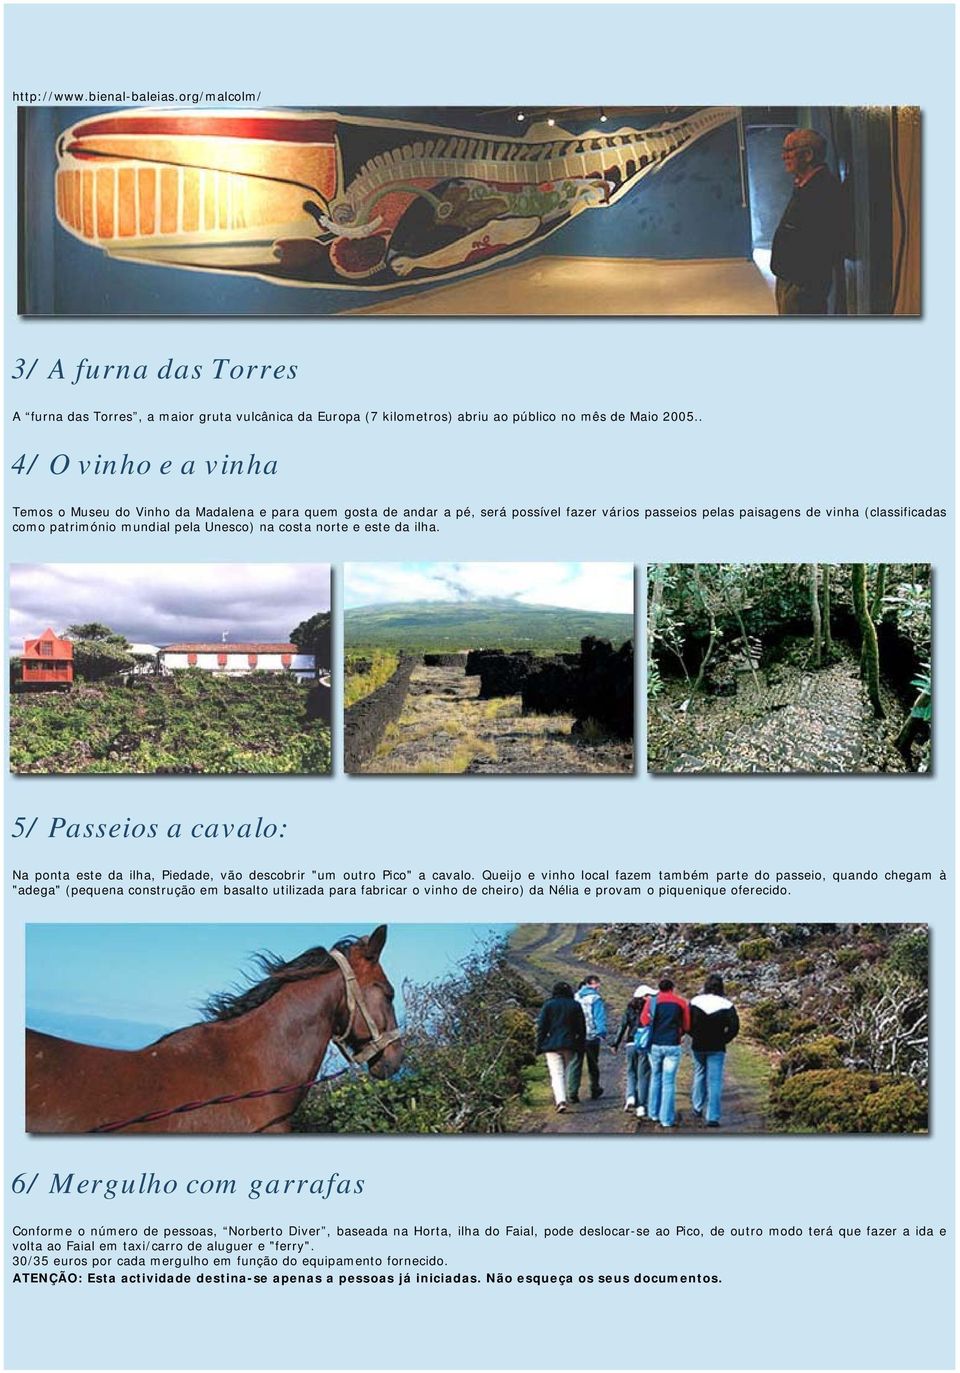 Unesco) na costa norte e este da ilha. 5/ Passeios a cavalo: Na ponta este da ilha, Piedade, vão descobrir "um outro Pico" a cavalo.